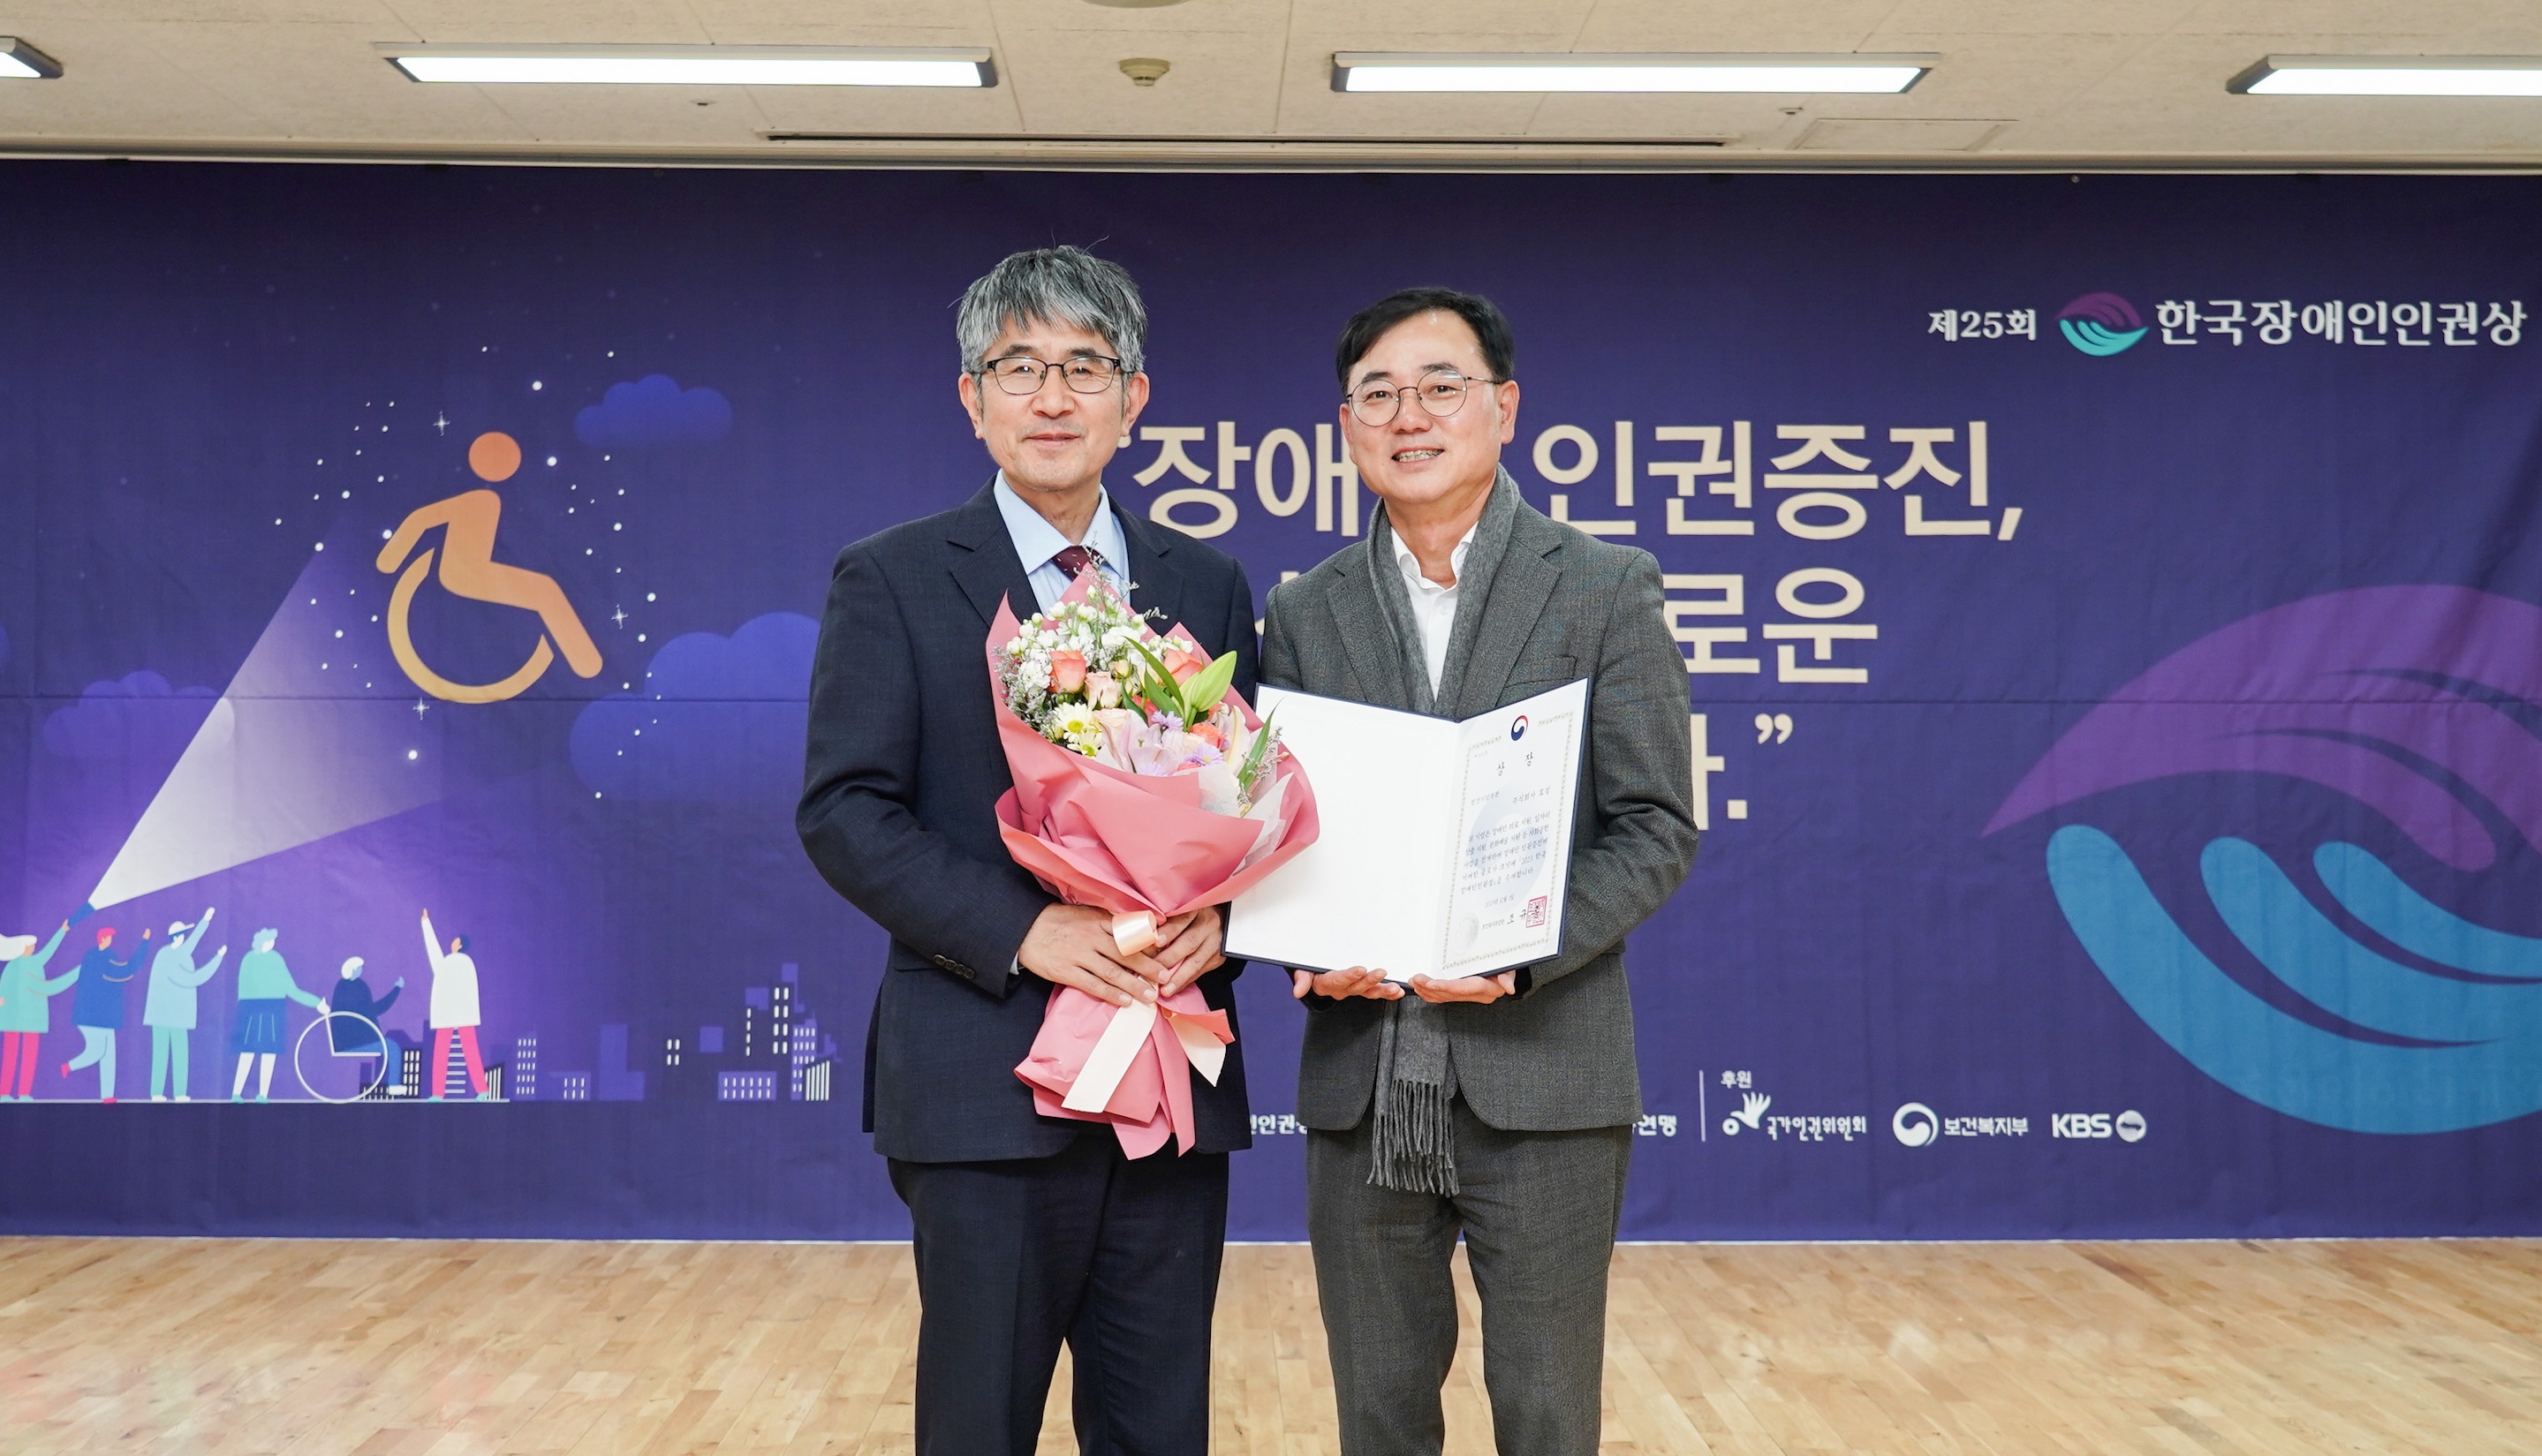 [산업 이슈] 효성, 장애인 인권 향상에 기여한 공로로 한국장애인인권상 수상 外